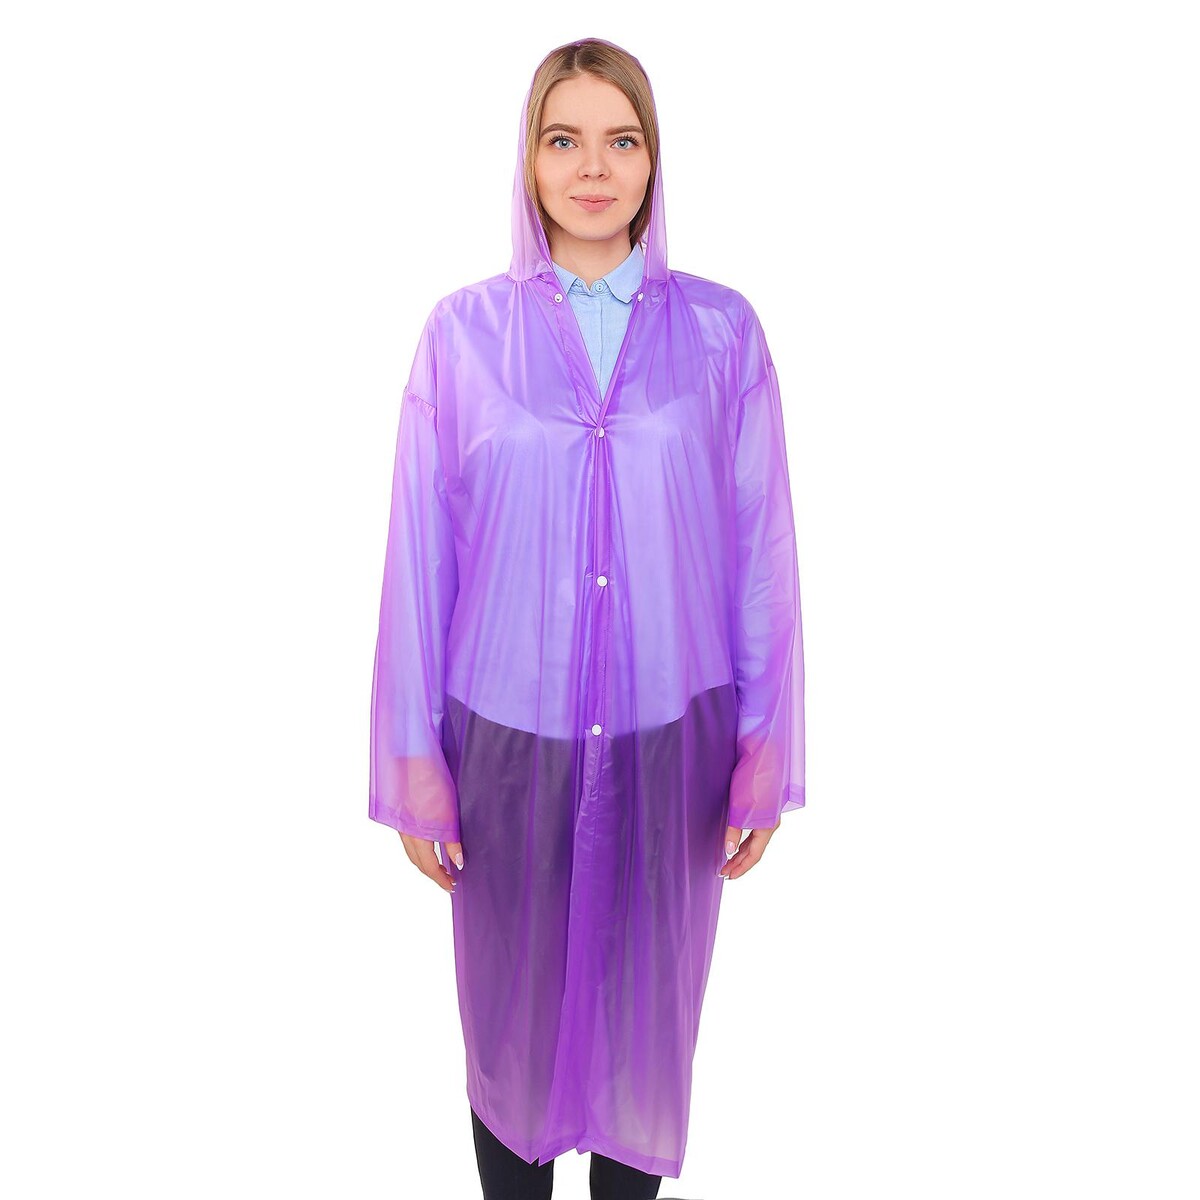 Дождевик-плащ взрослый, универсальный, цвет фиолетовый дождевик maclay рыбацкий шитый 65 мкр 200 г 10% р универсальный